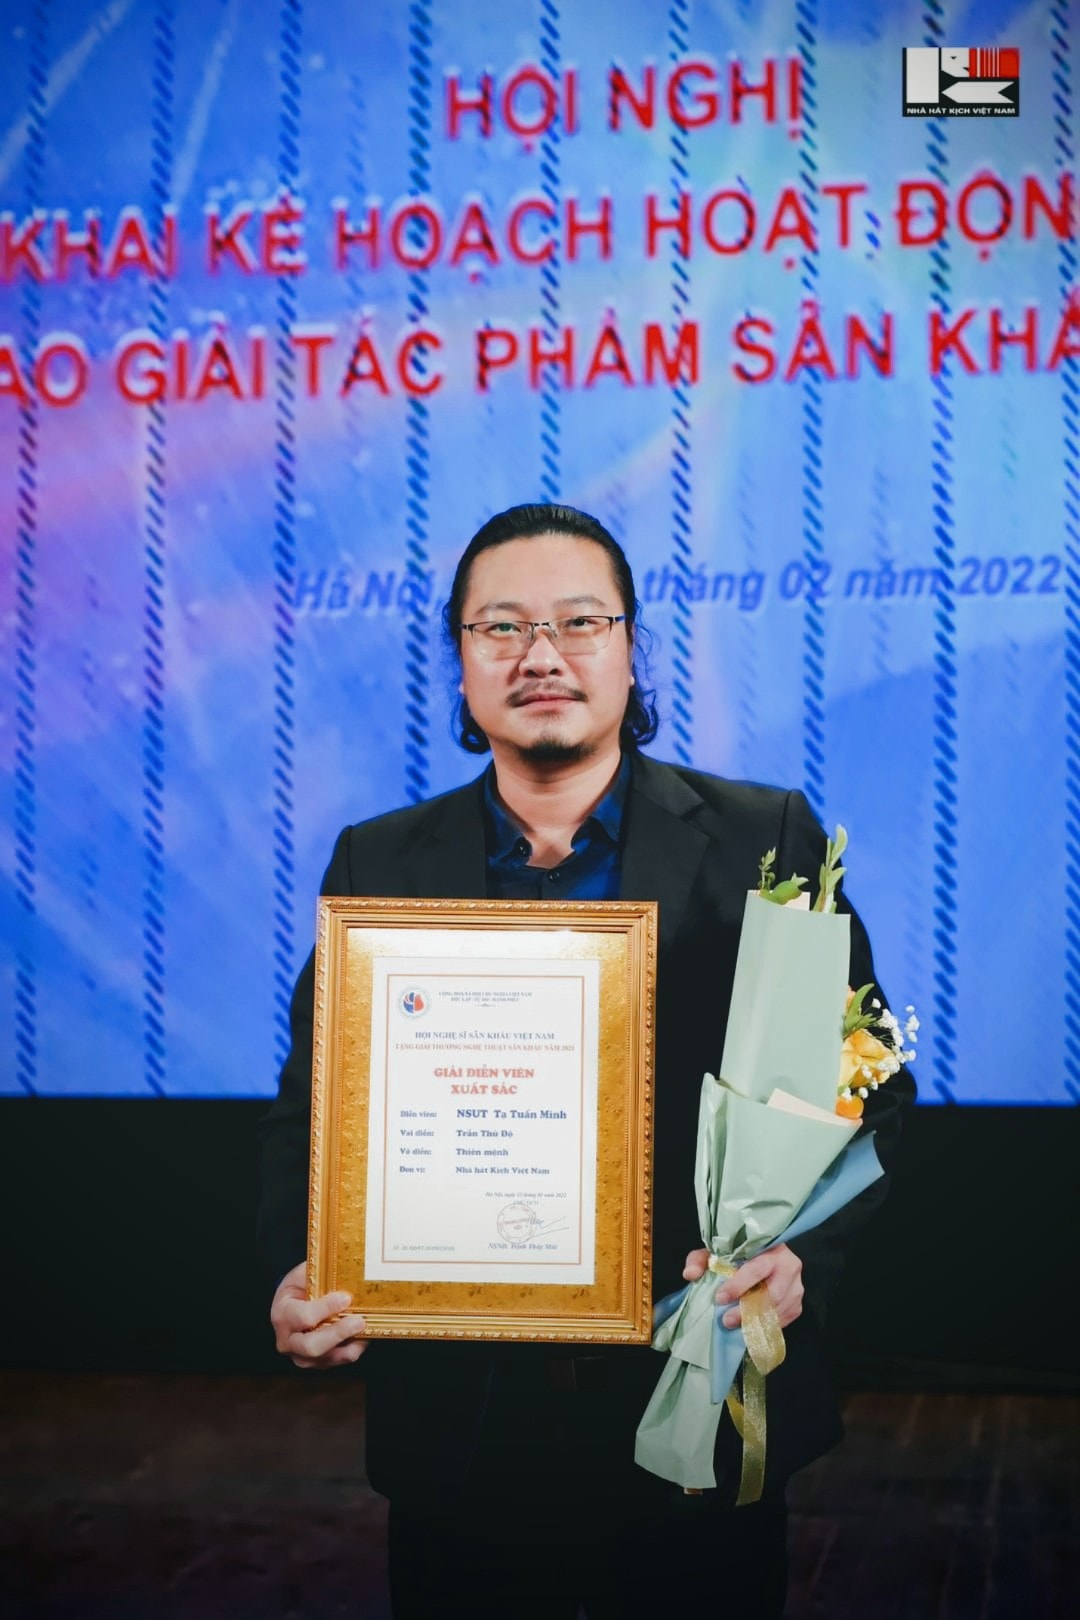 NSƯT Tạ Tuấn Minh và diễn viên Thùy Dương nhận giải xuất sắc của Hội Nghệ sĩ Sân khấu - Ảnh 2.